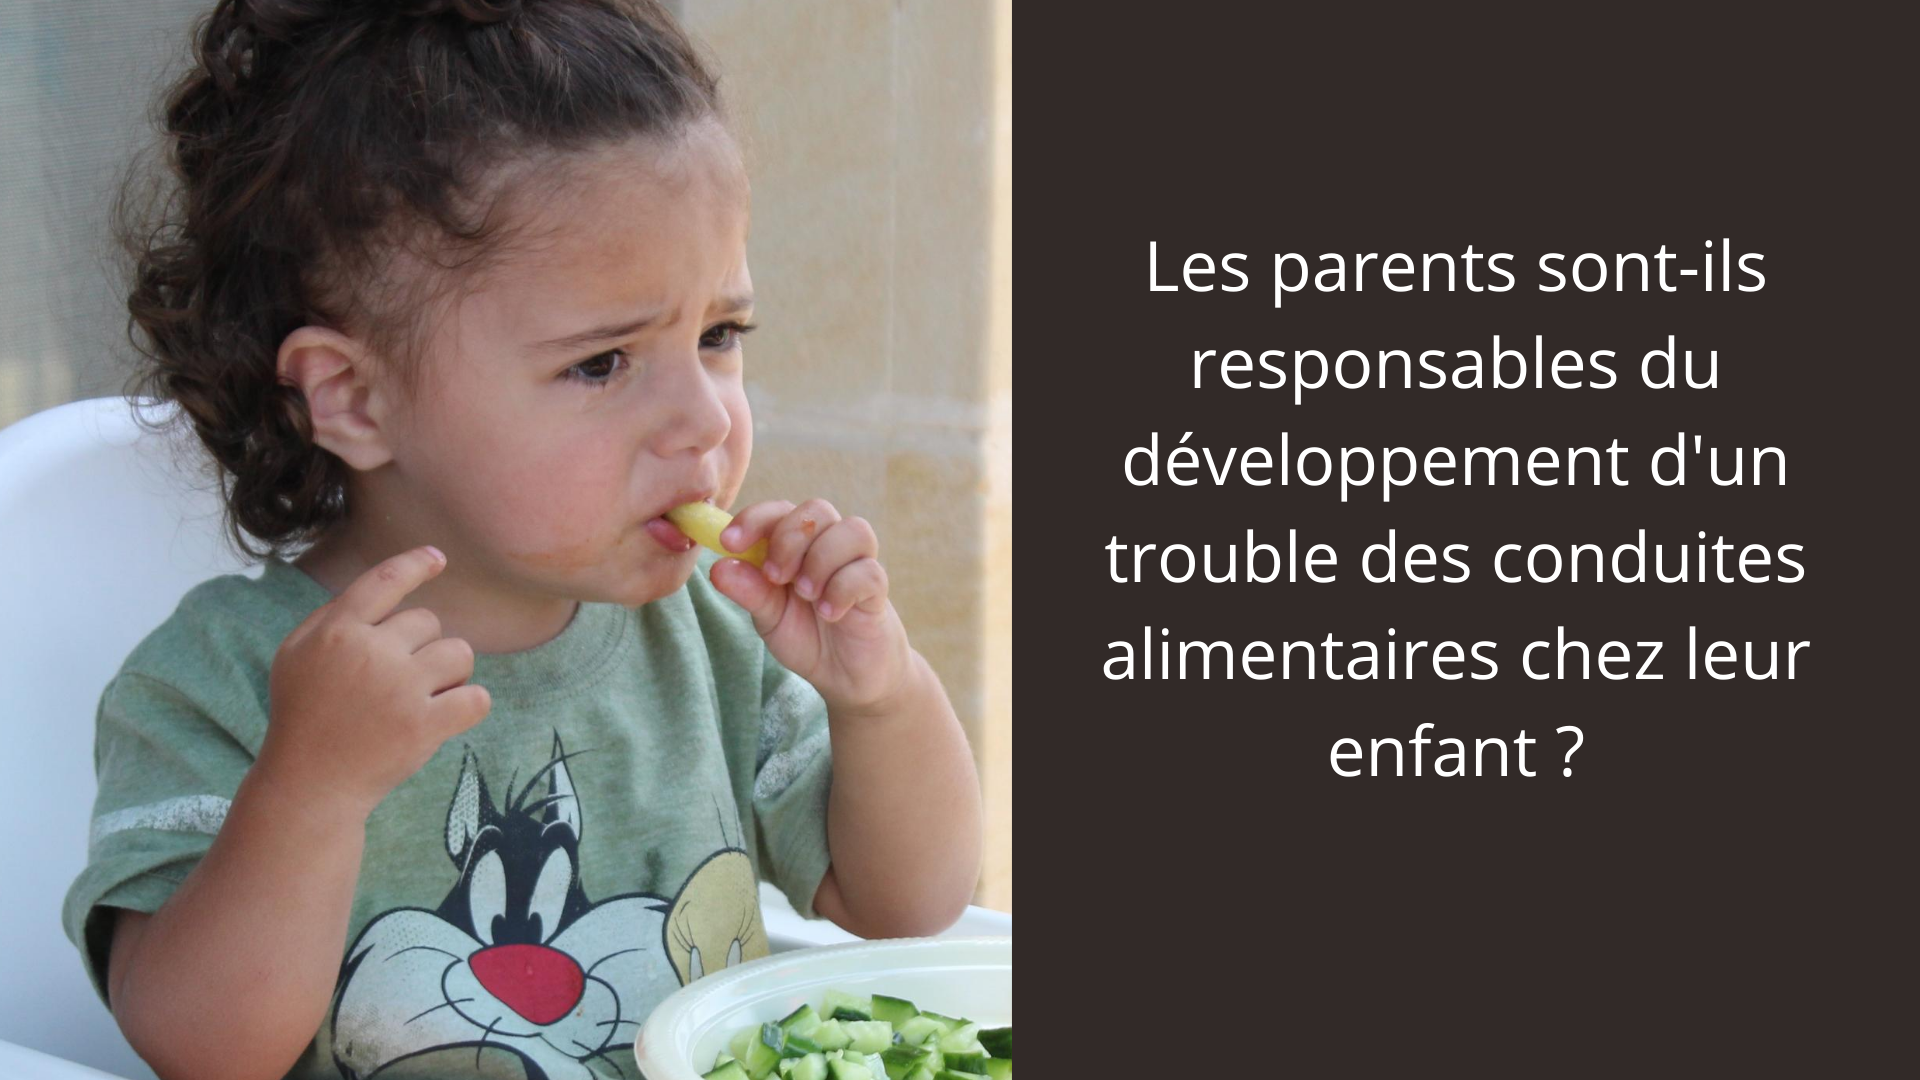 Les parents sont-ils responsables du développement d'un trouble des conduites alimentaires chez leur enfant